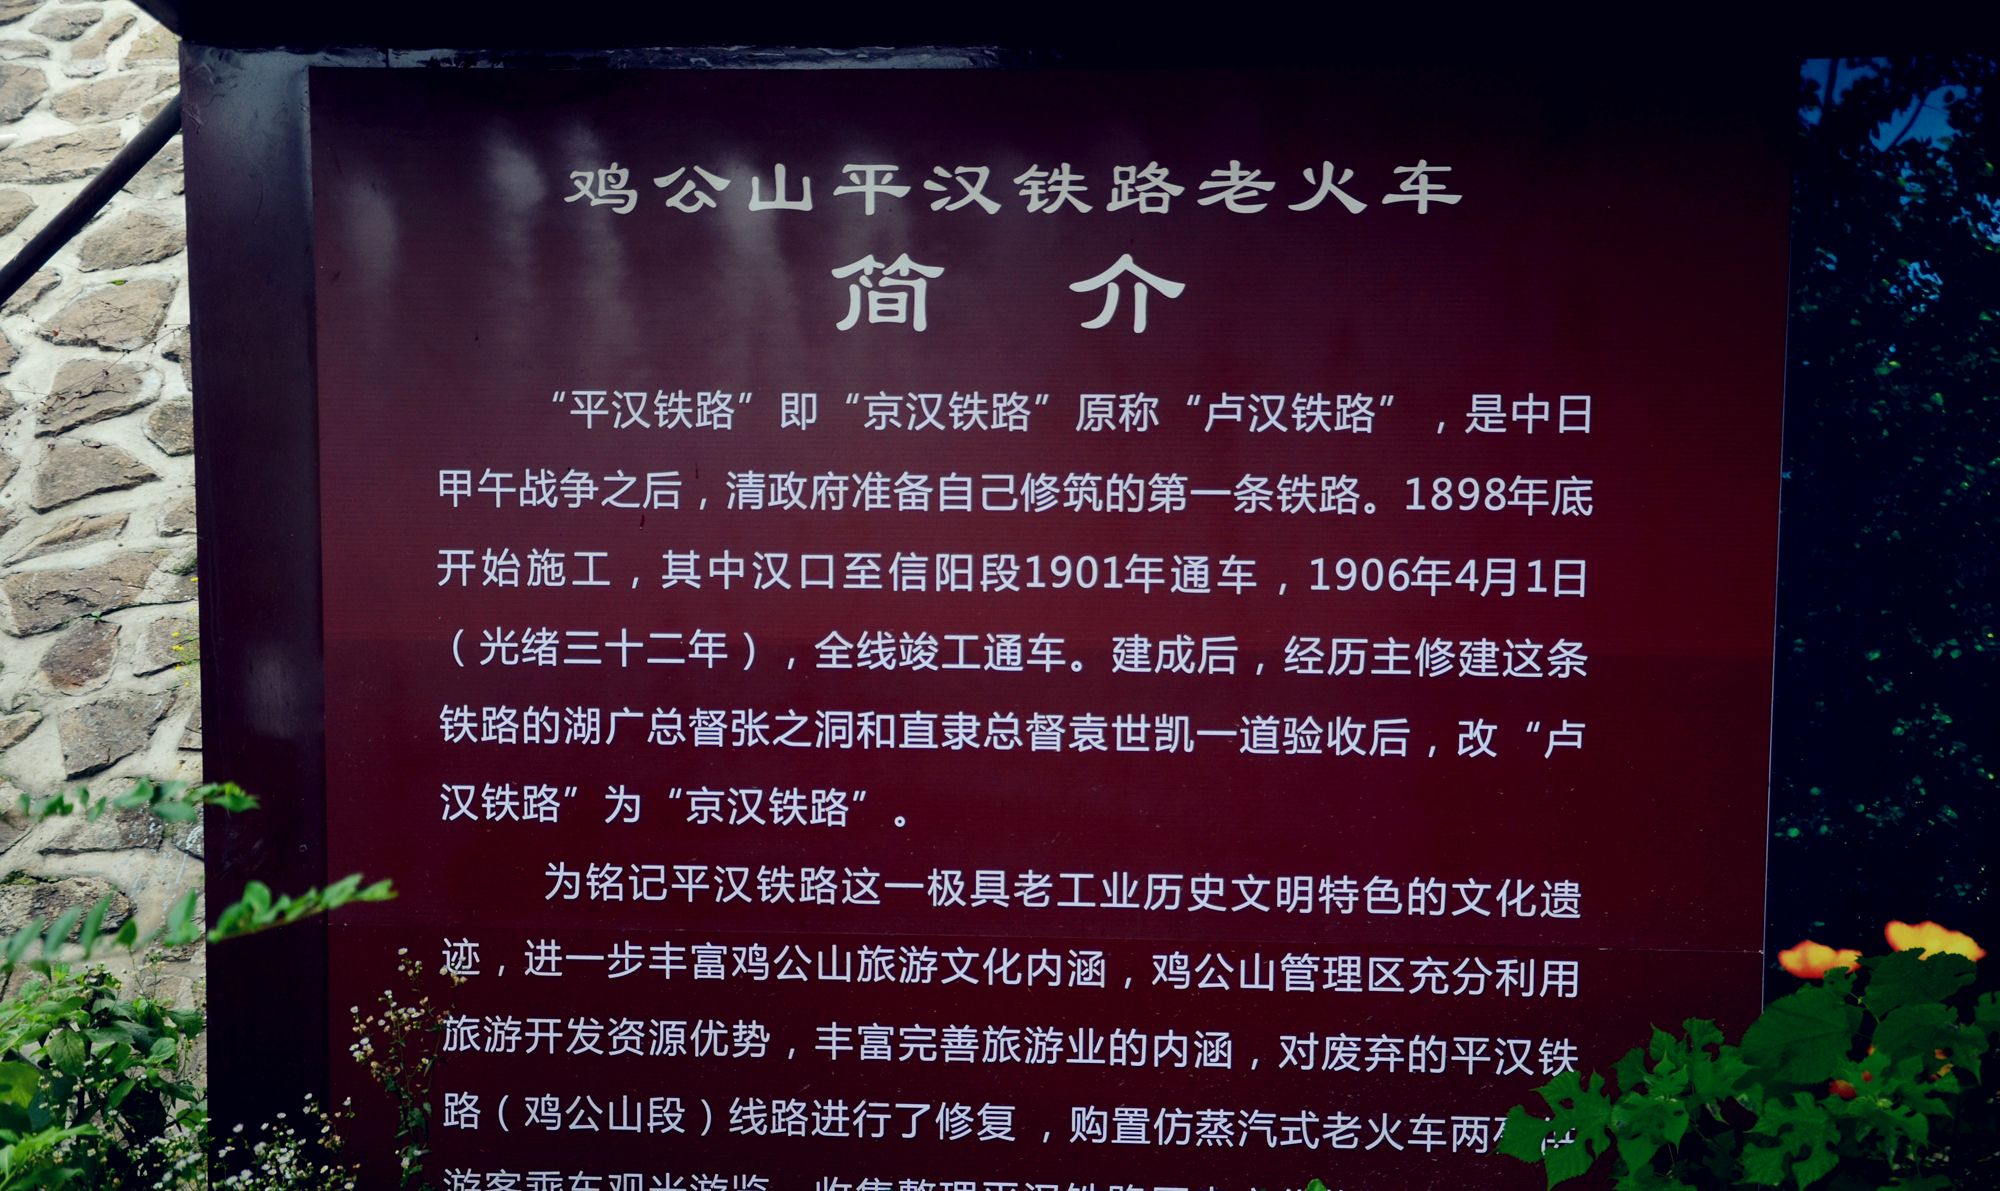 1 / 9 在河南信阳鸡公山,有一个老火车站,是平汉铁路(京汉铁路前身)的